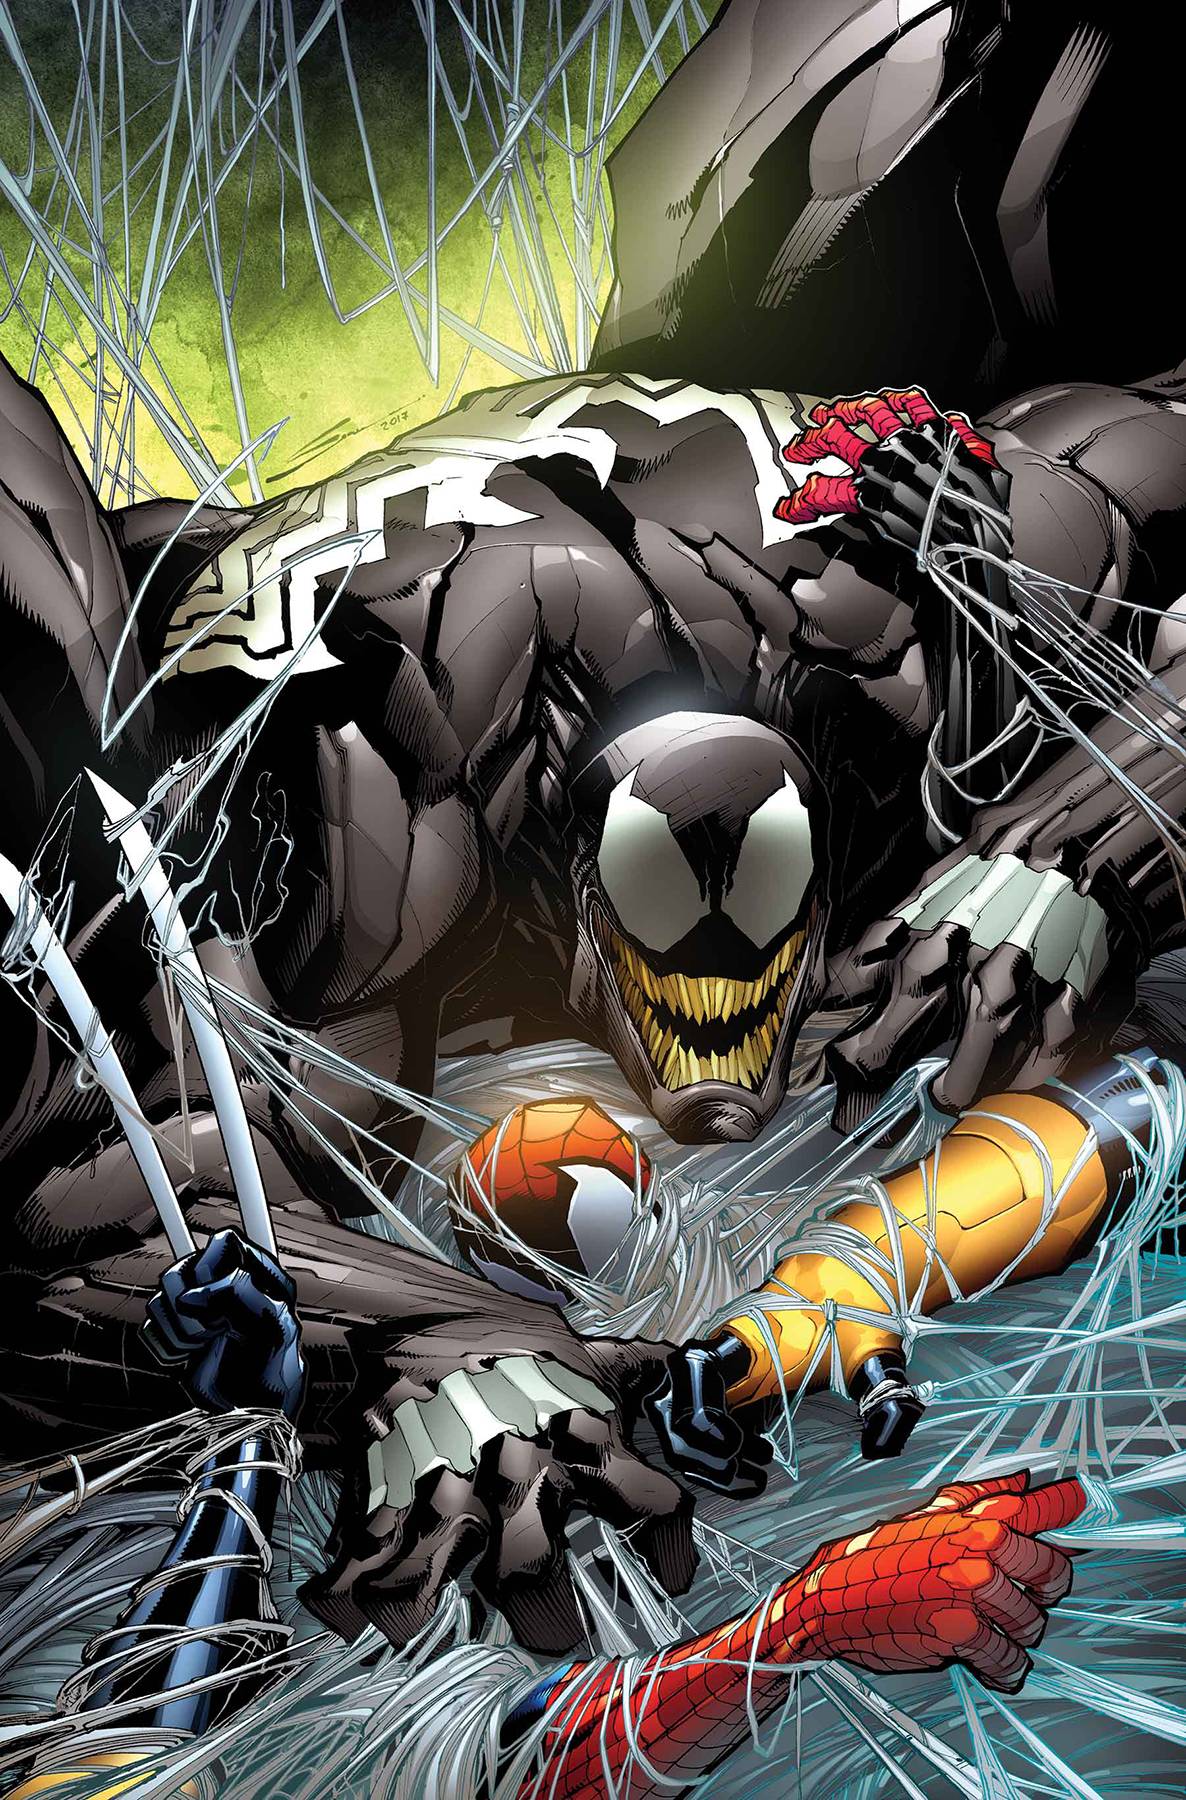 Venom #150 by Sandoval Poster